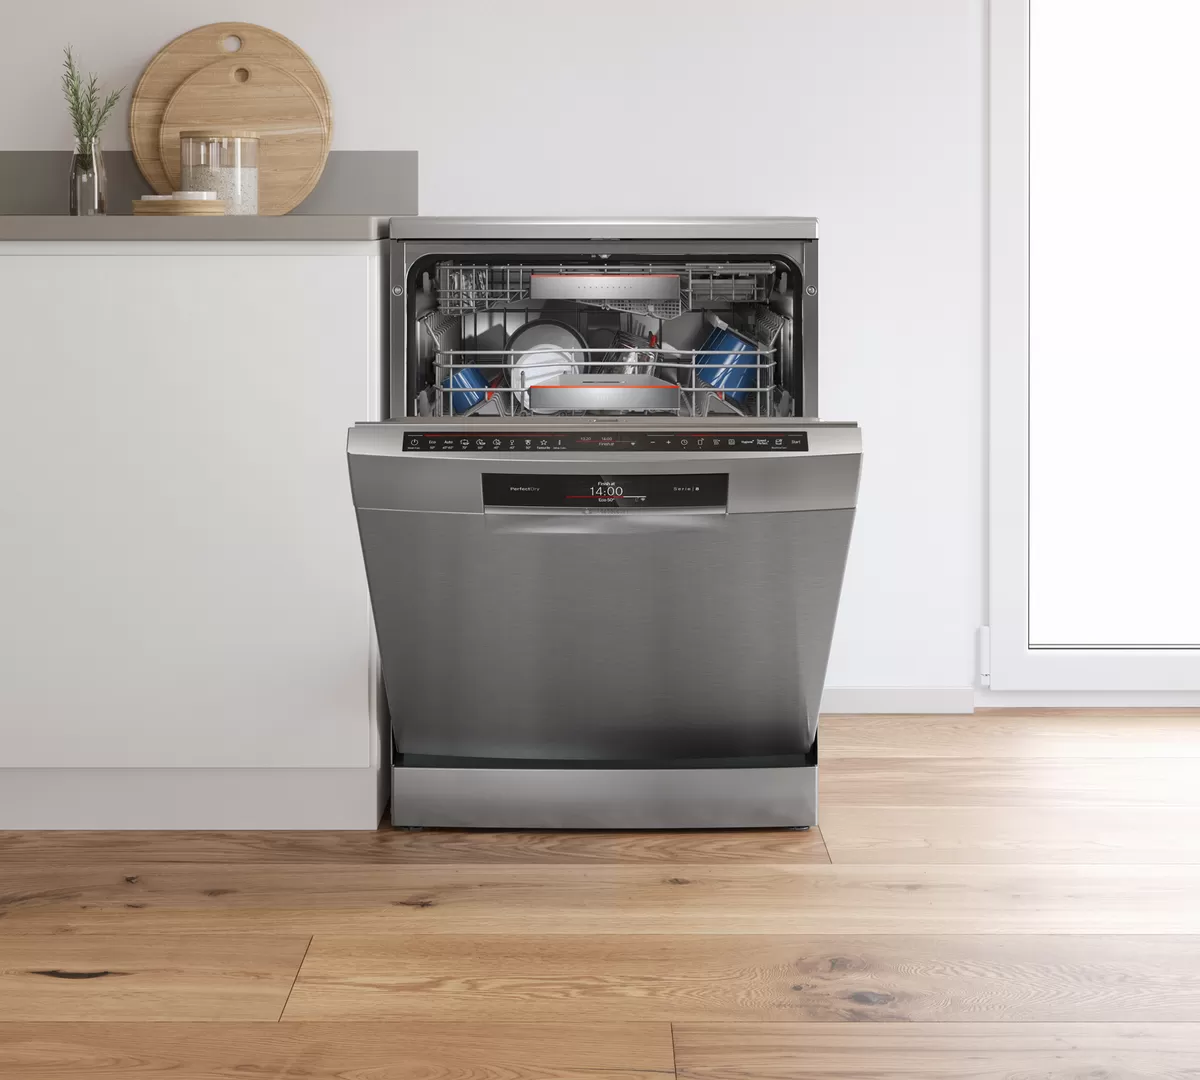 Встраиваемая посудомоечная машина 60 рейтинг качество. Посудомоечная машина Bosch 60 отдельностоящая. Посудомойка Bosch 60 отдельностоящая. Посудомоечная машина Bosch 60 встраиваемая. Посудомоечная машина бош 60 посудомоечная встраиваемая.